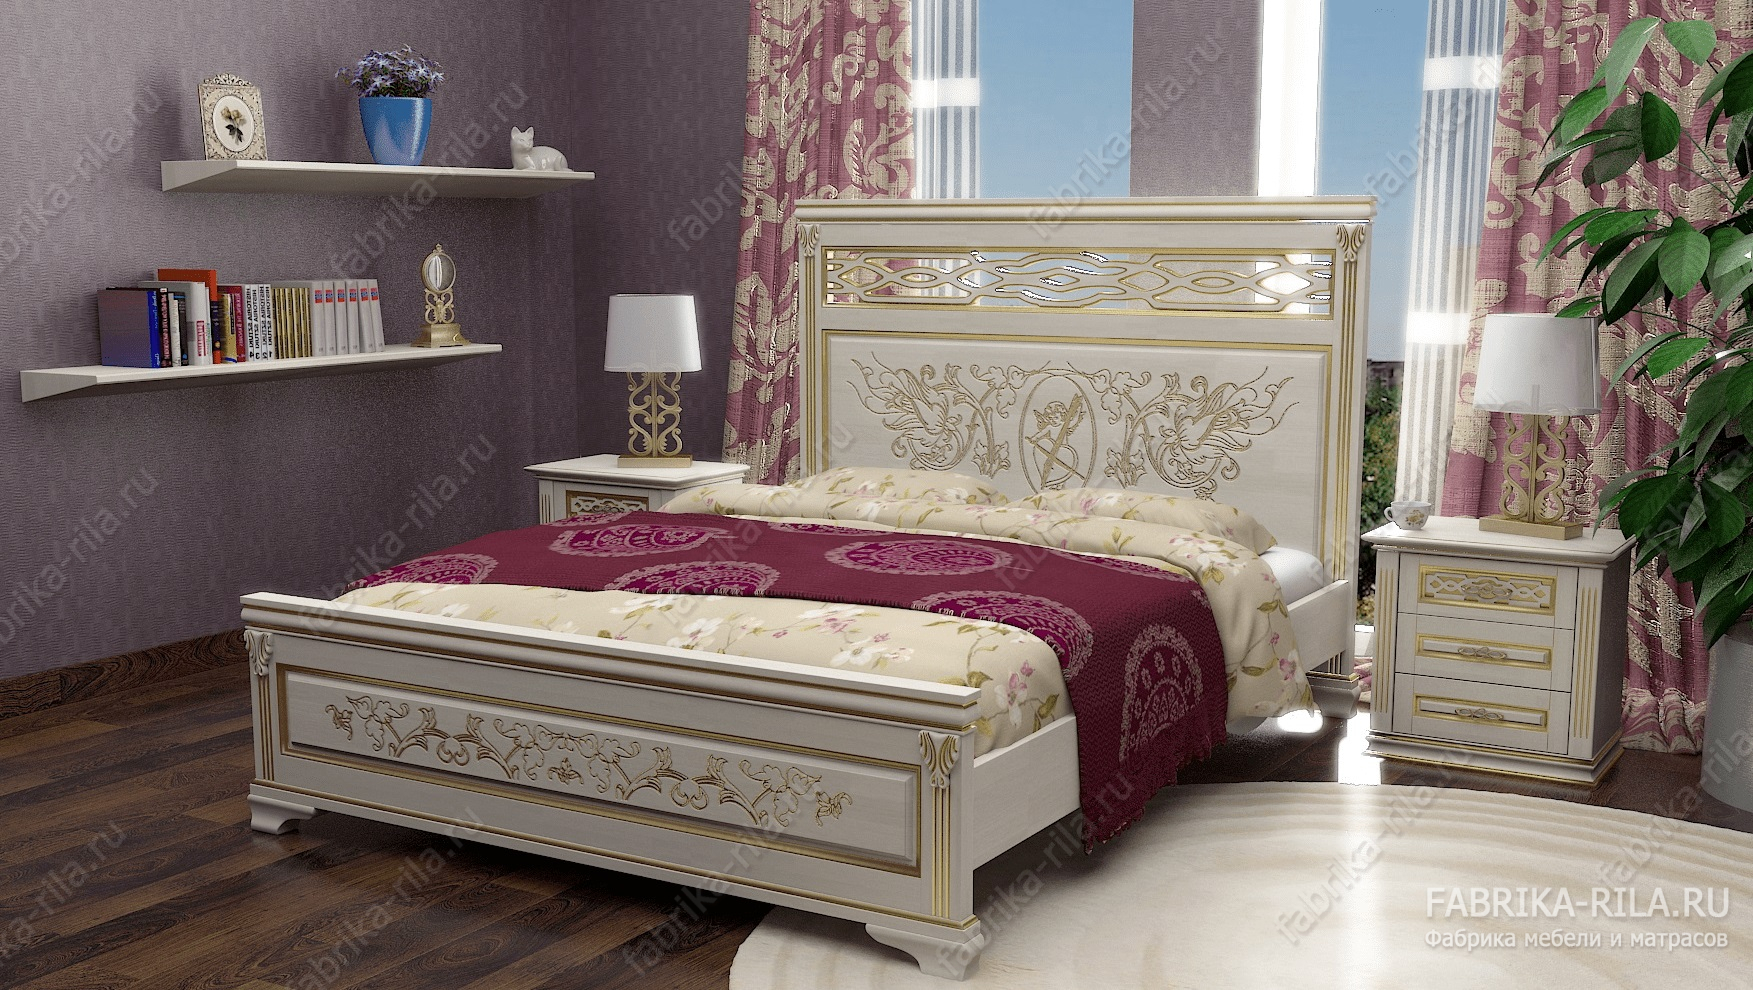 Кровать Lirоna 3 — 90x190 см. из сосны